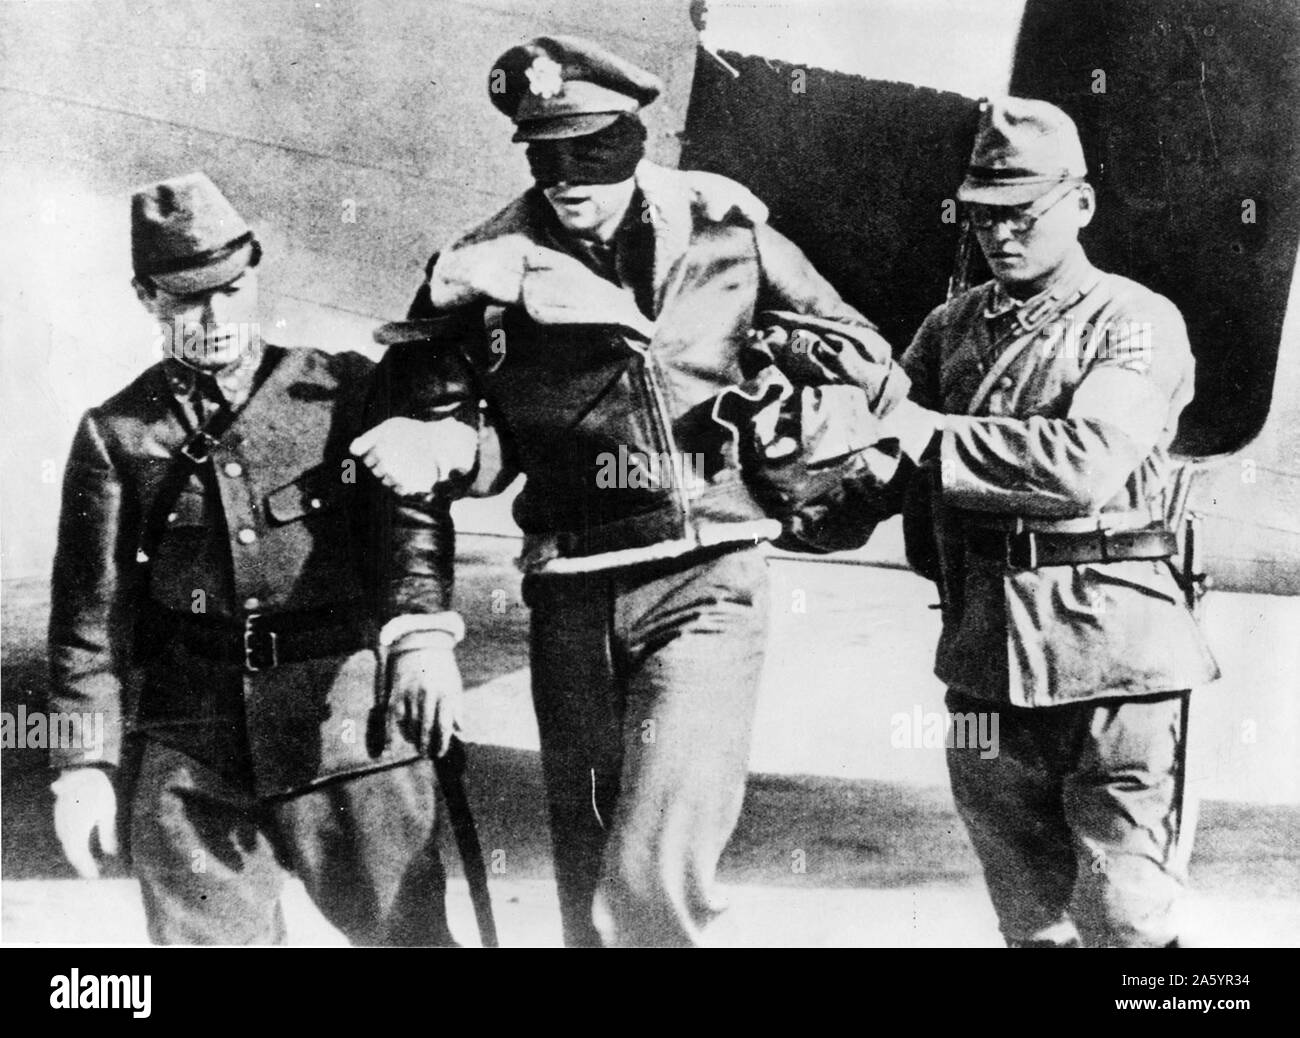 La seconda guerra mondiale: catturato e gli occhi bendati pilota della US Air Force, con due soldati giapponesi. Acquisite durante la durante la Doolittle raid aerei su Tokyo. 1942 Foto Stock